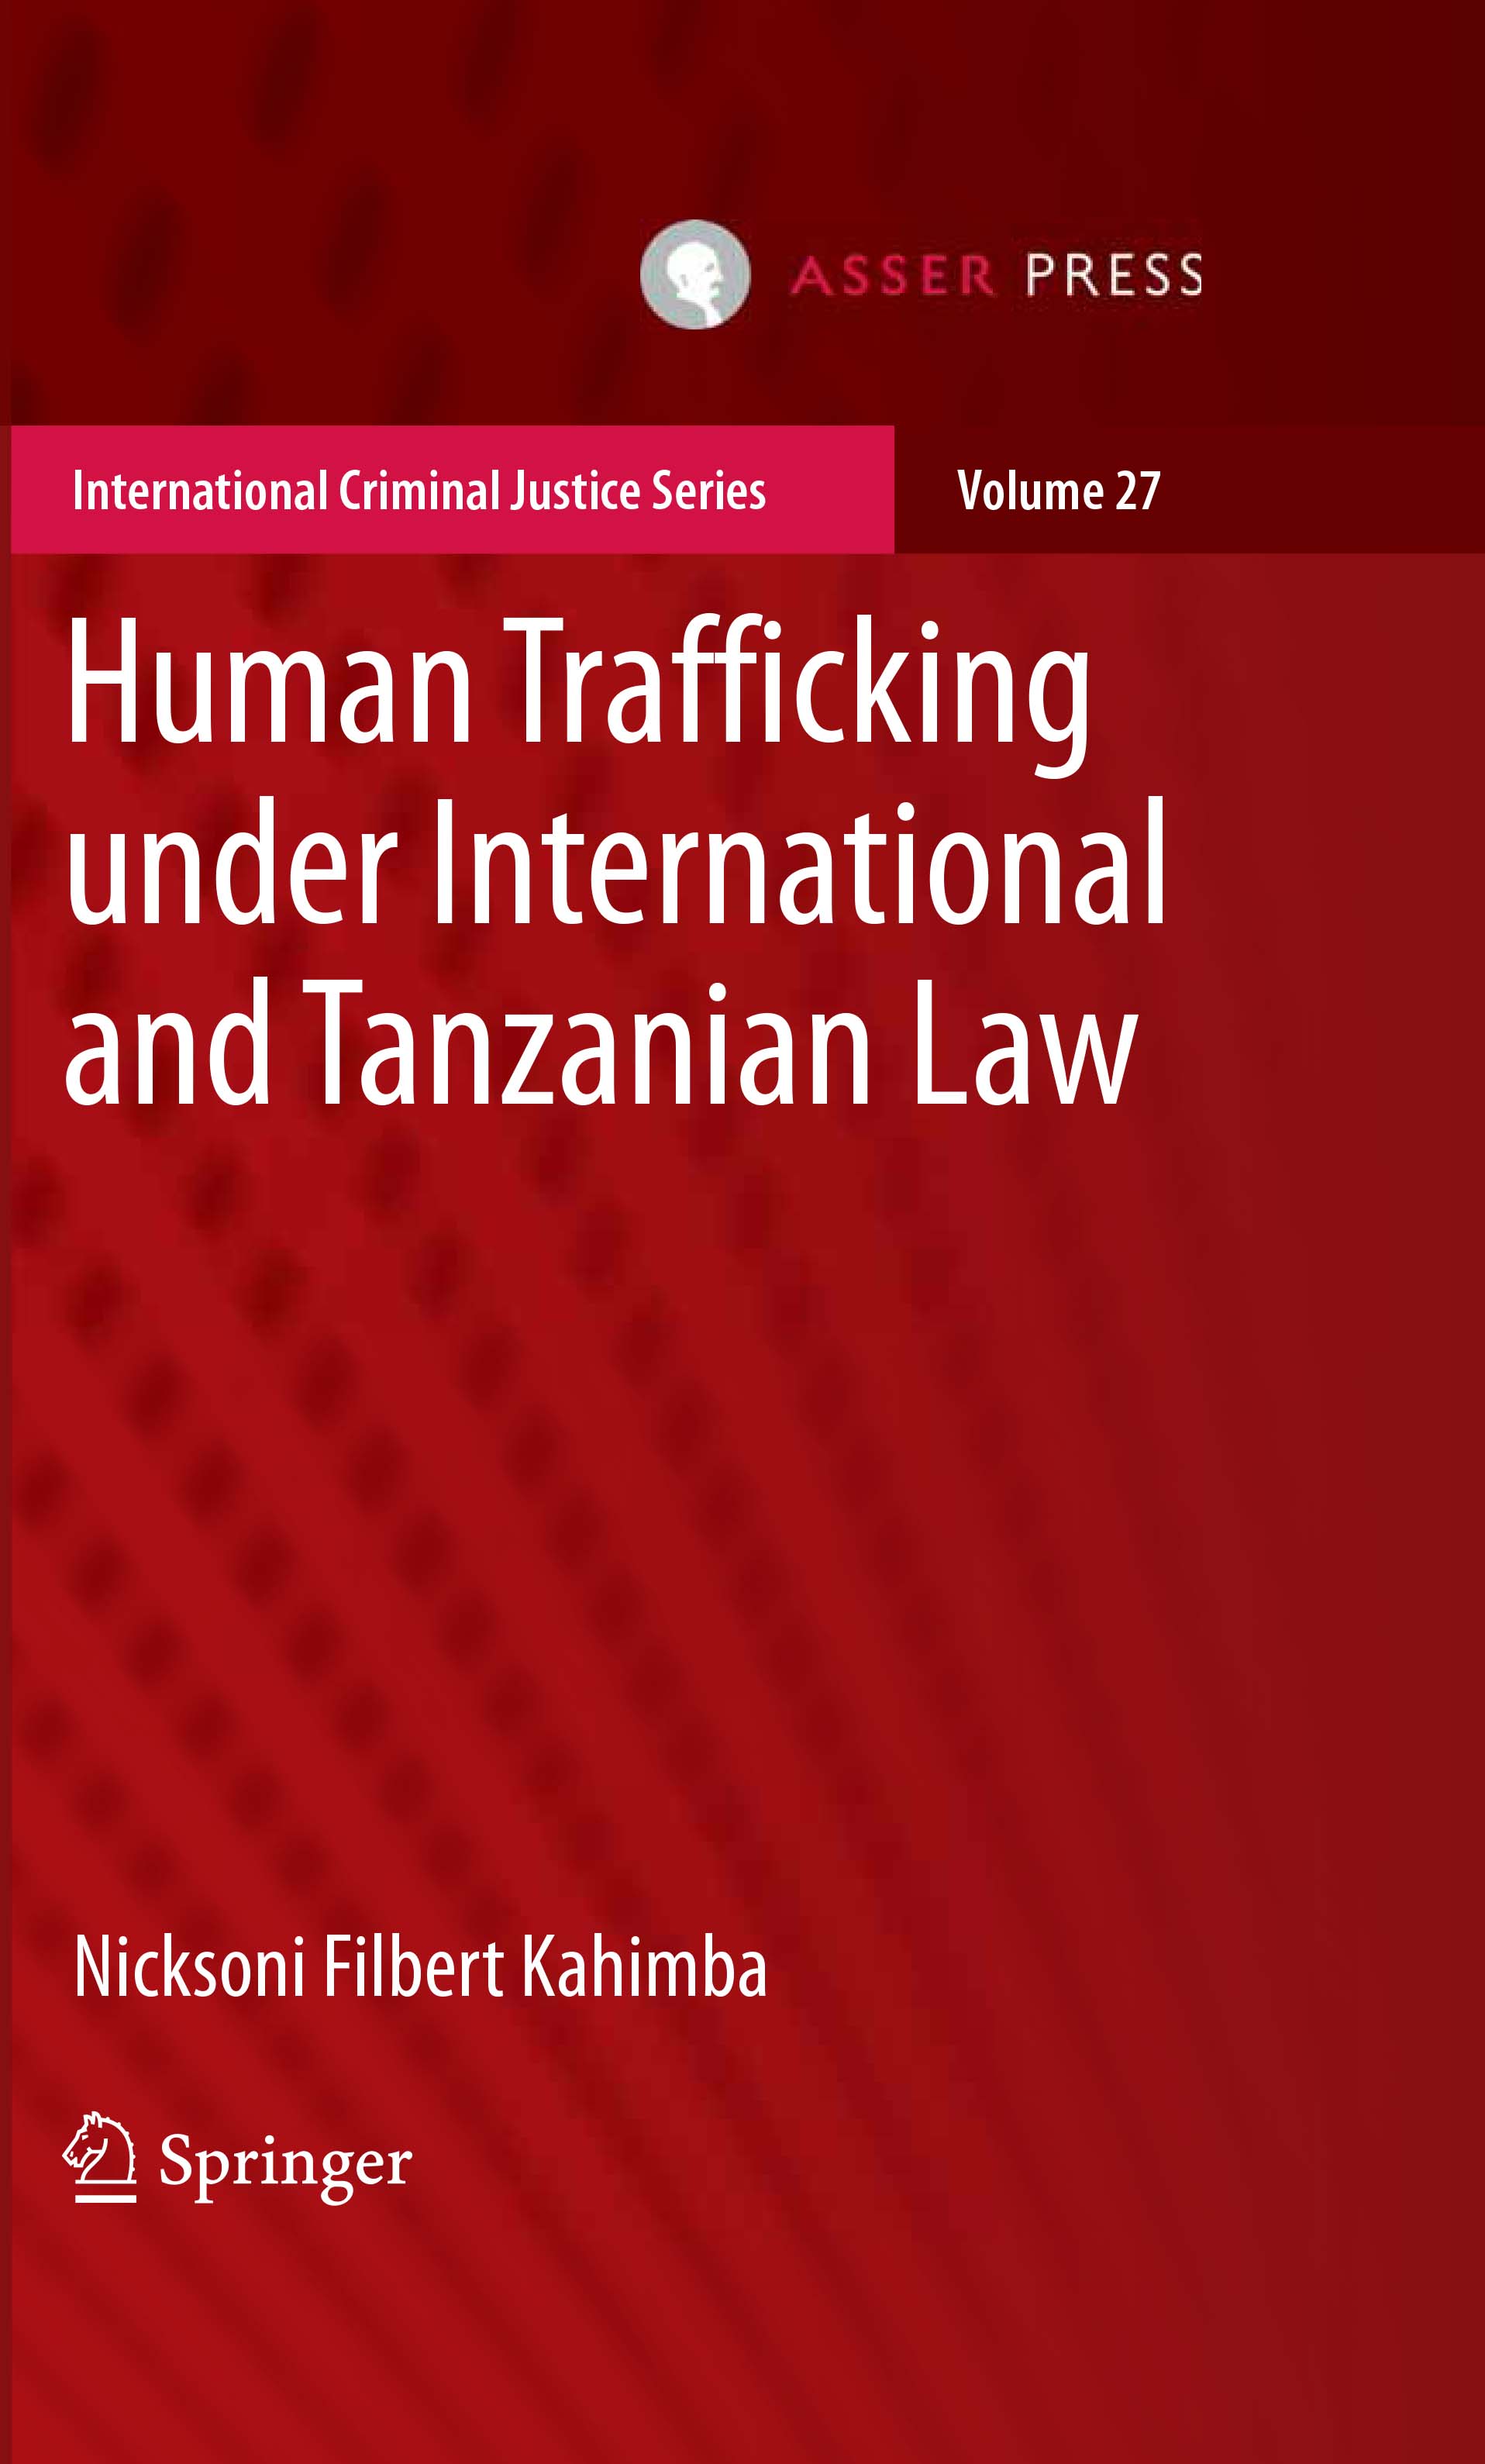 Human Trafficking under International and Tanzanian Law